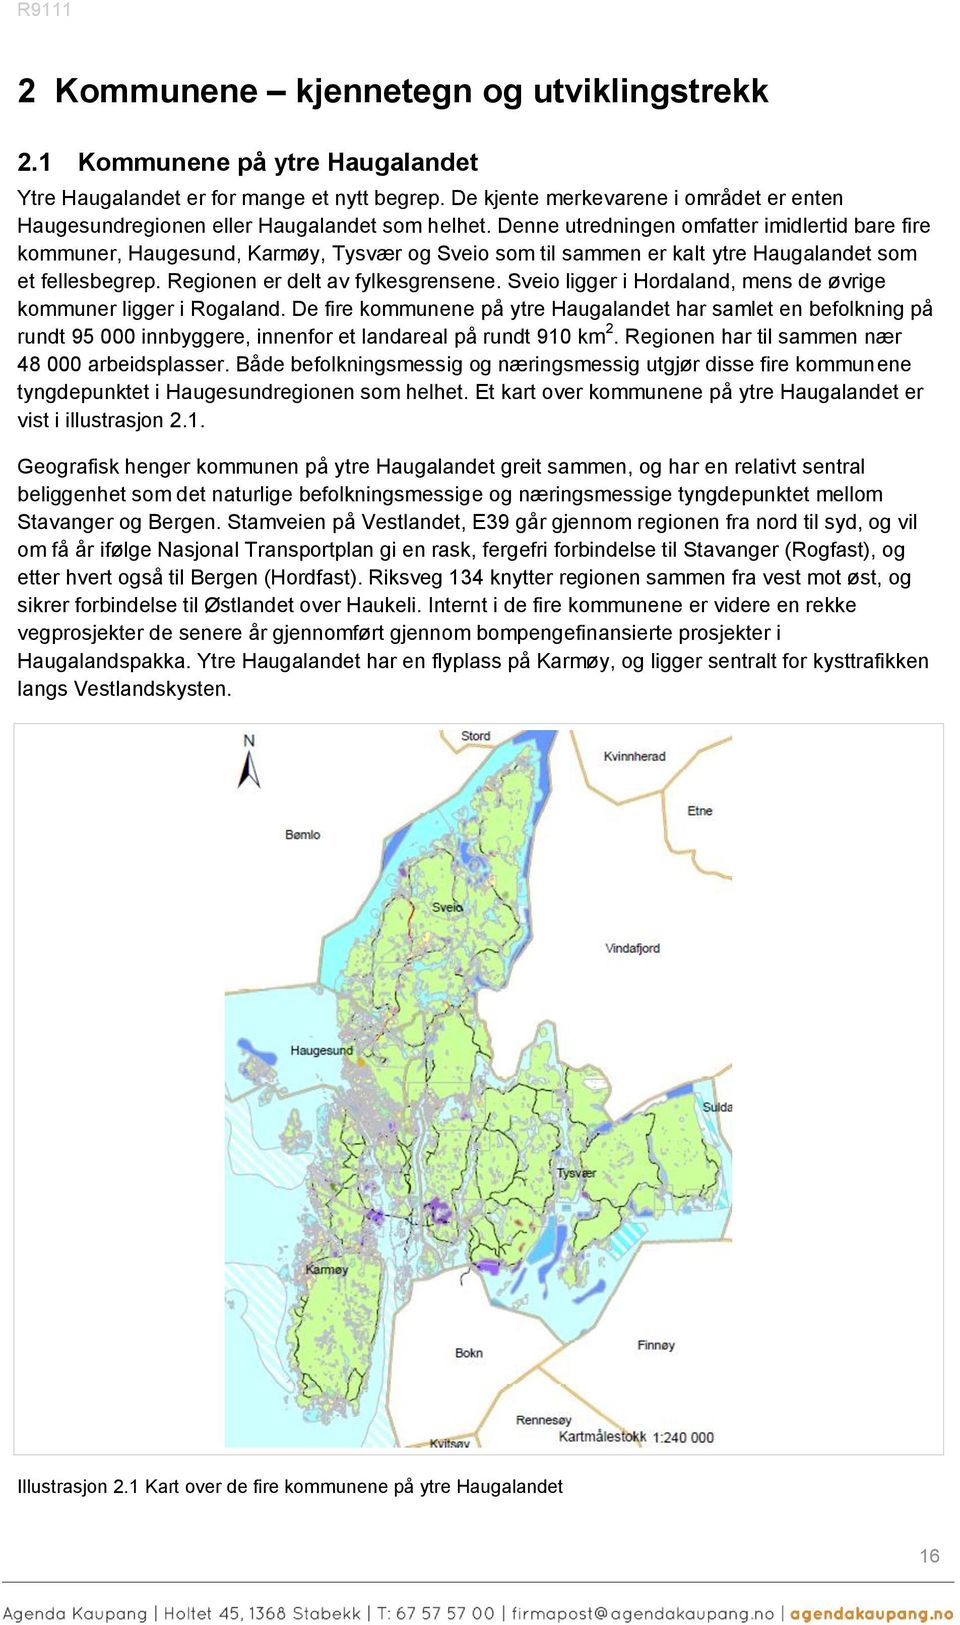 Denne utredningen omfatter imidlertid bare fire kommuner, Haugesund, Karmøy, Tysvær og Sveio som til sammen er kalt ytre Haugalandet som et fellesbegrep. Regionen er delt av fylkesgrensene.